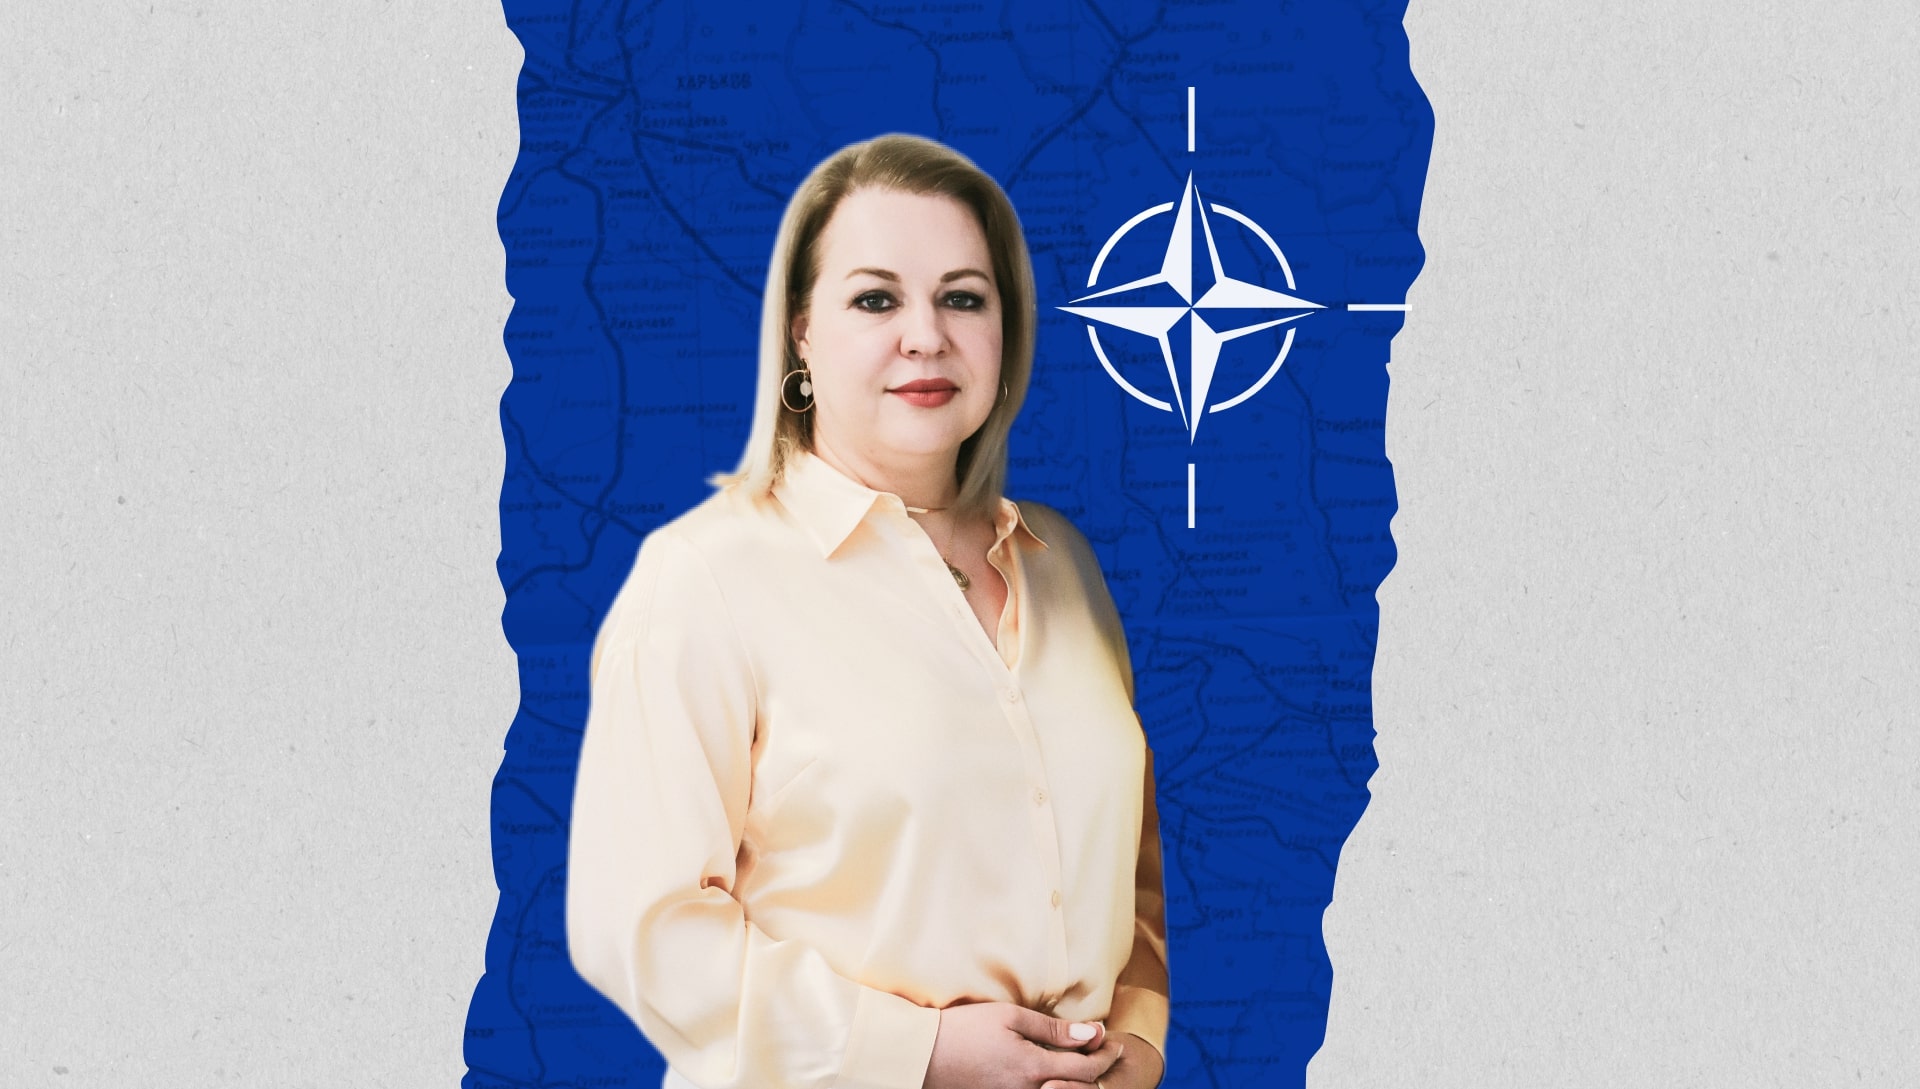 Посол при НАТО: Ми не хочемо зависнути у відкритих дверях і ще 20 років чути про Бухарест - Фото